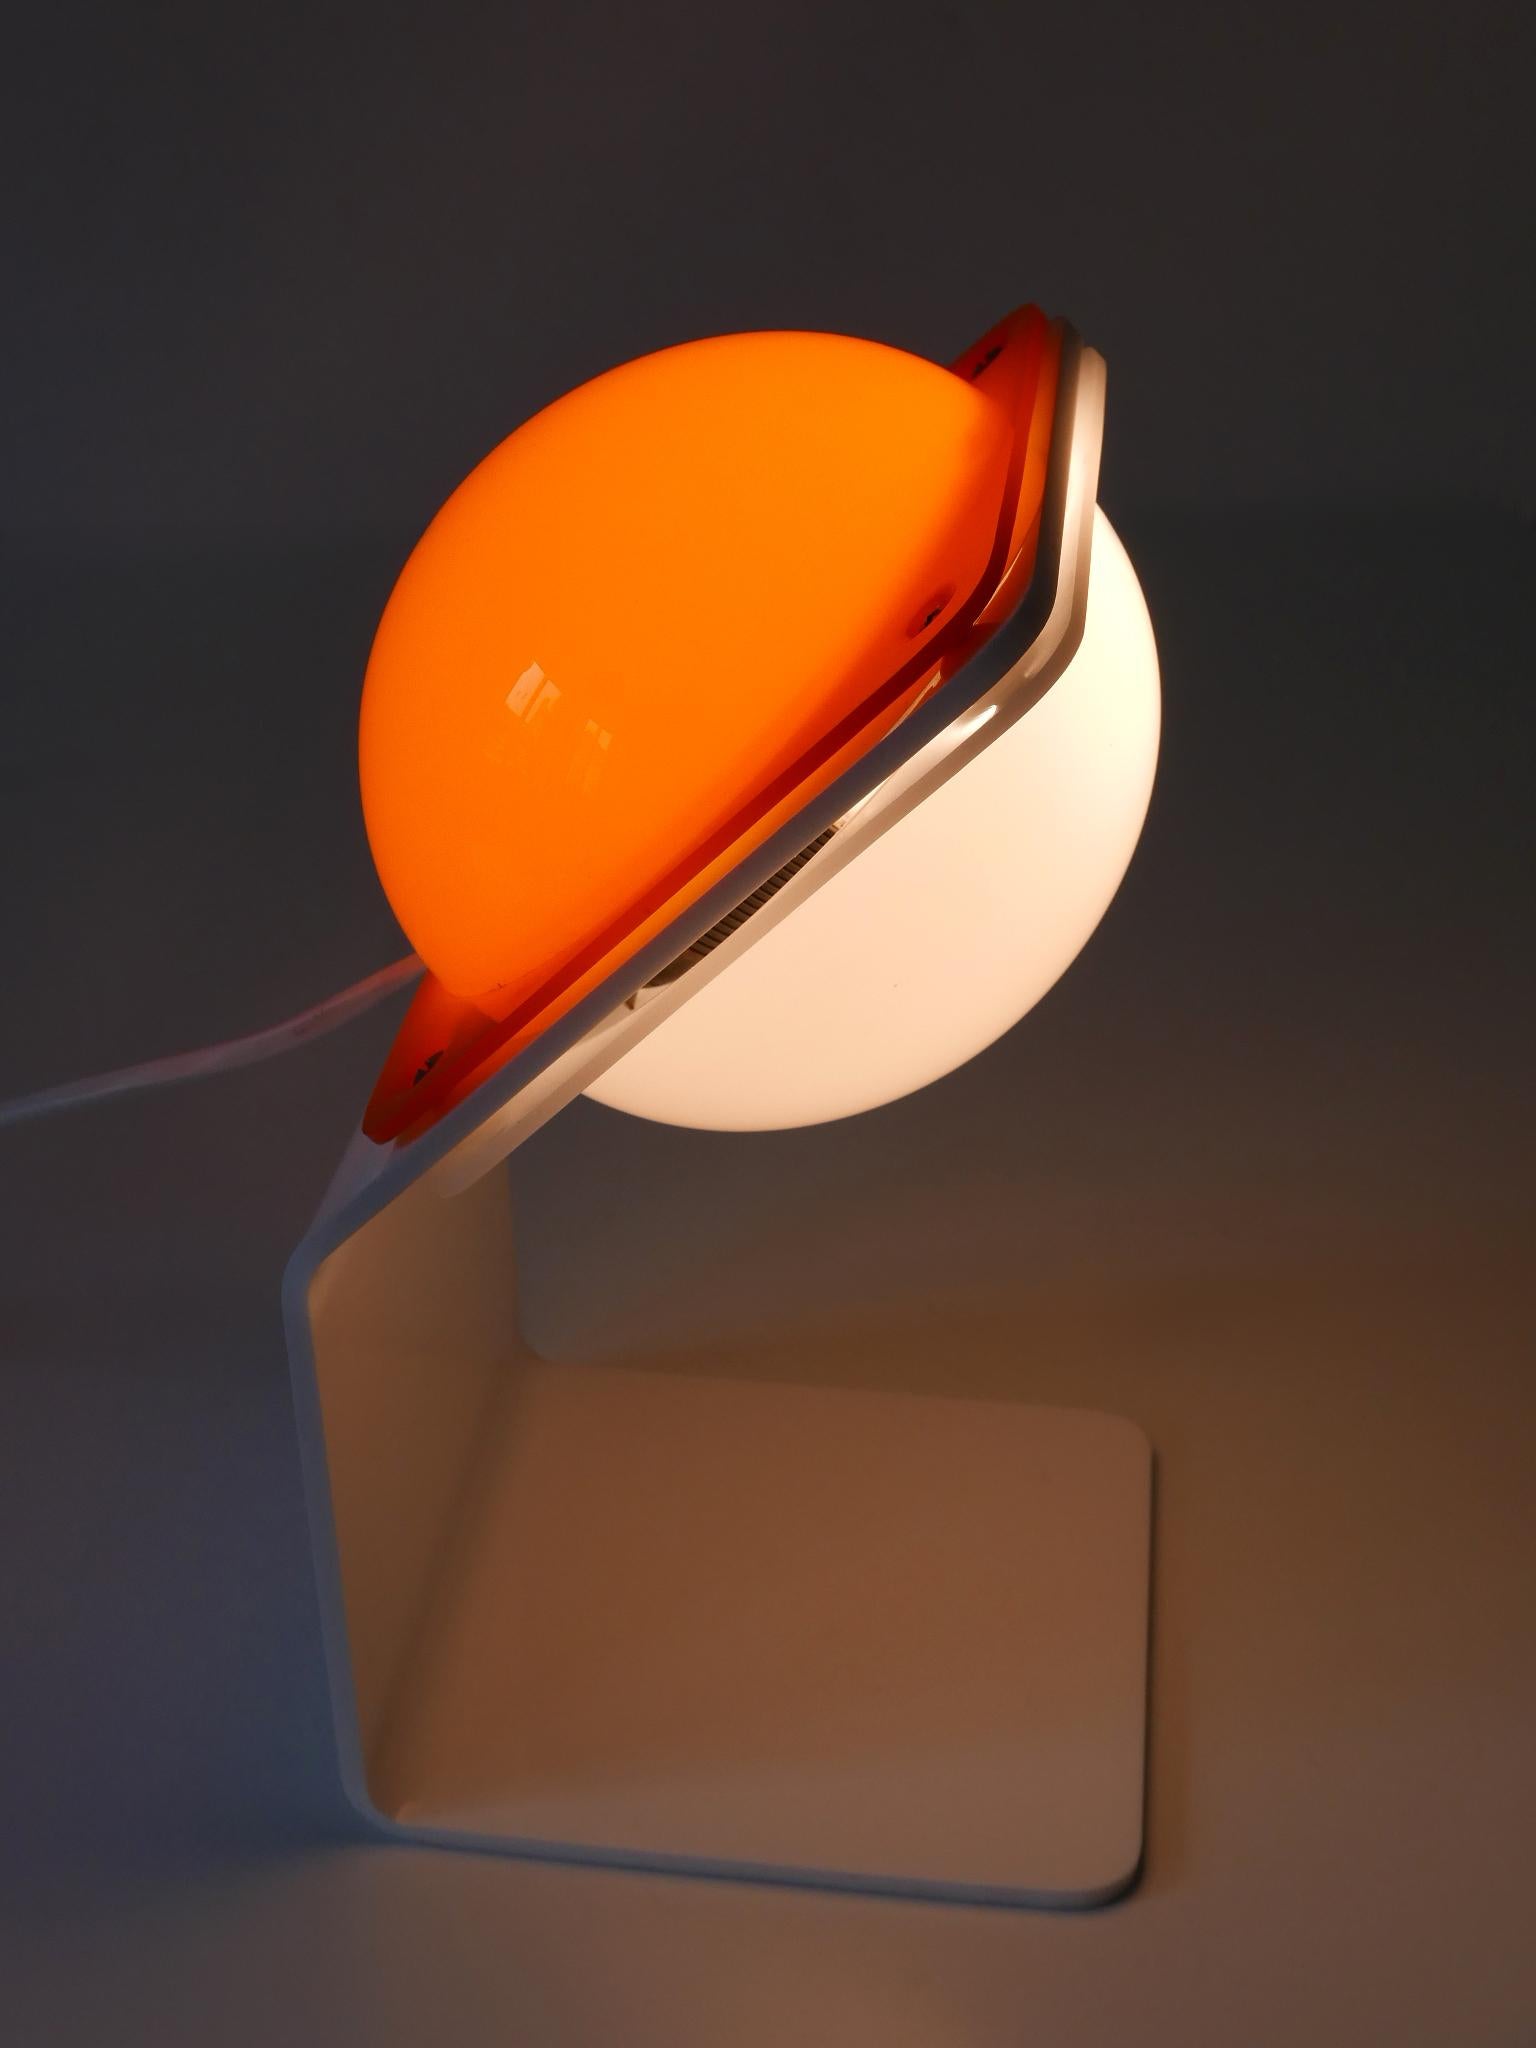 Lampe de table en lucite extrêmement rare, élégante et très décorative, de style Modern-Decor. Conçu et fabriqué par Harvey Guzzini, Italie, années 1970.

Réalisée en lucite blanche et orange, la lampe est livrée avec 1 douille à vis E14 / E12